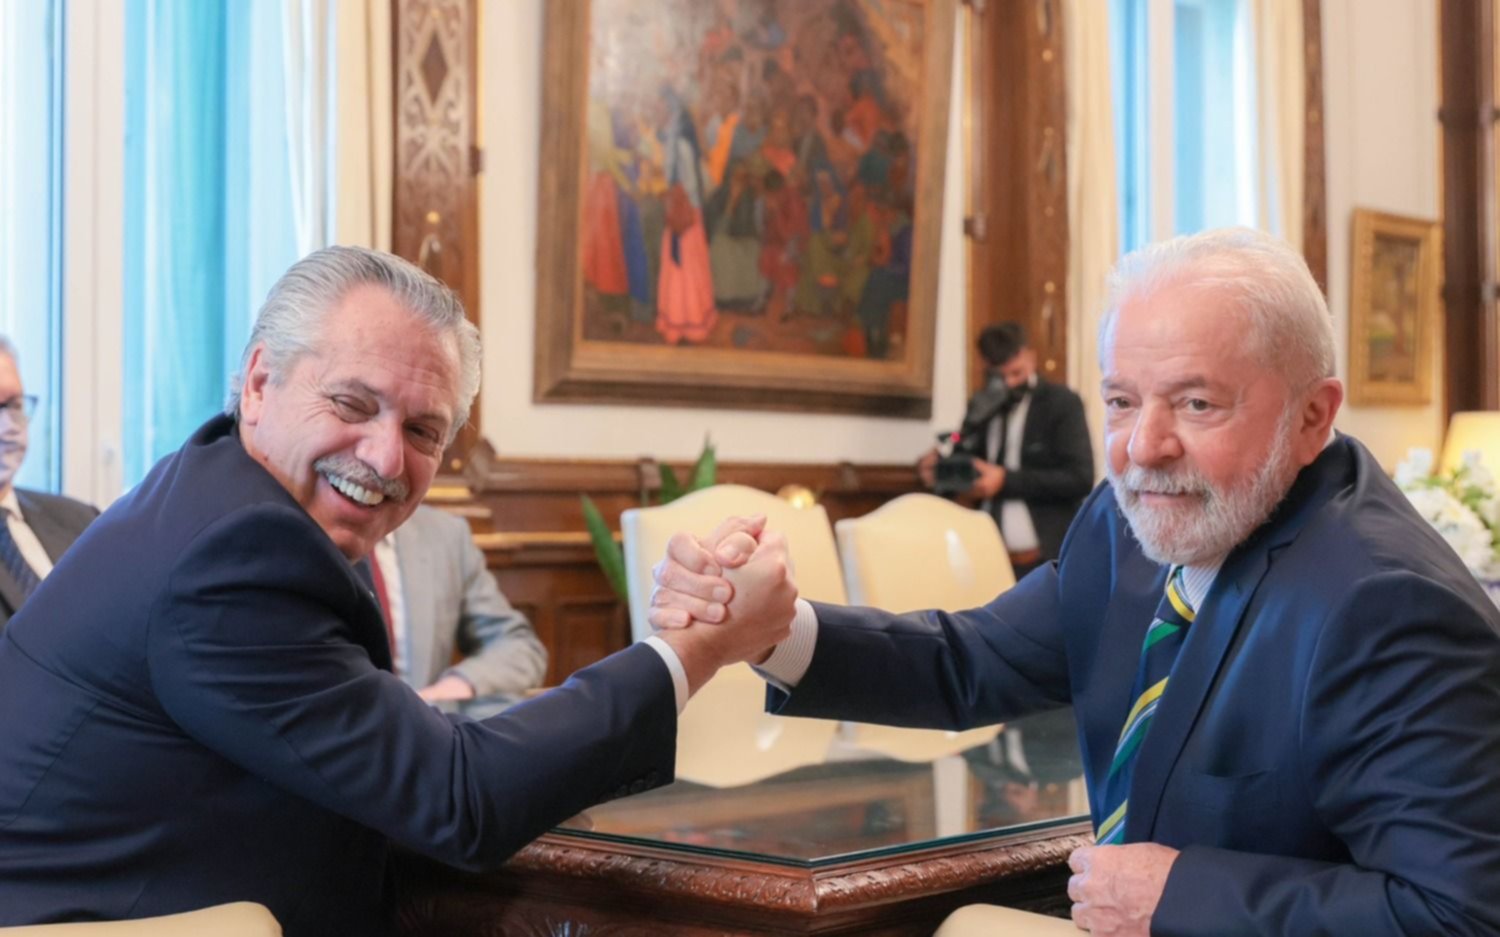  Alberto Fernández felicitó a Lula y celebró la "expresión democrática" en Brasil